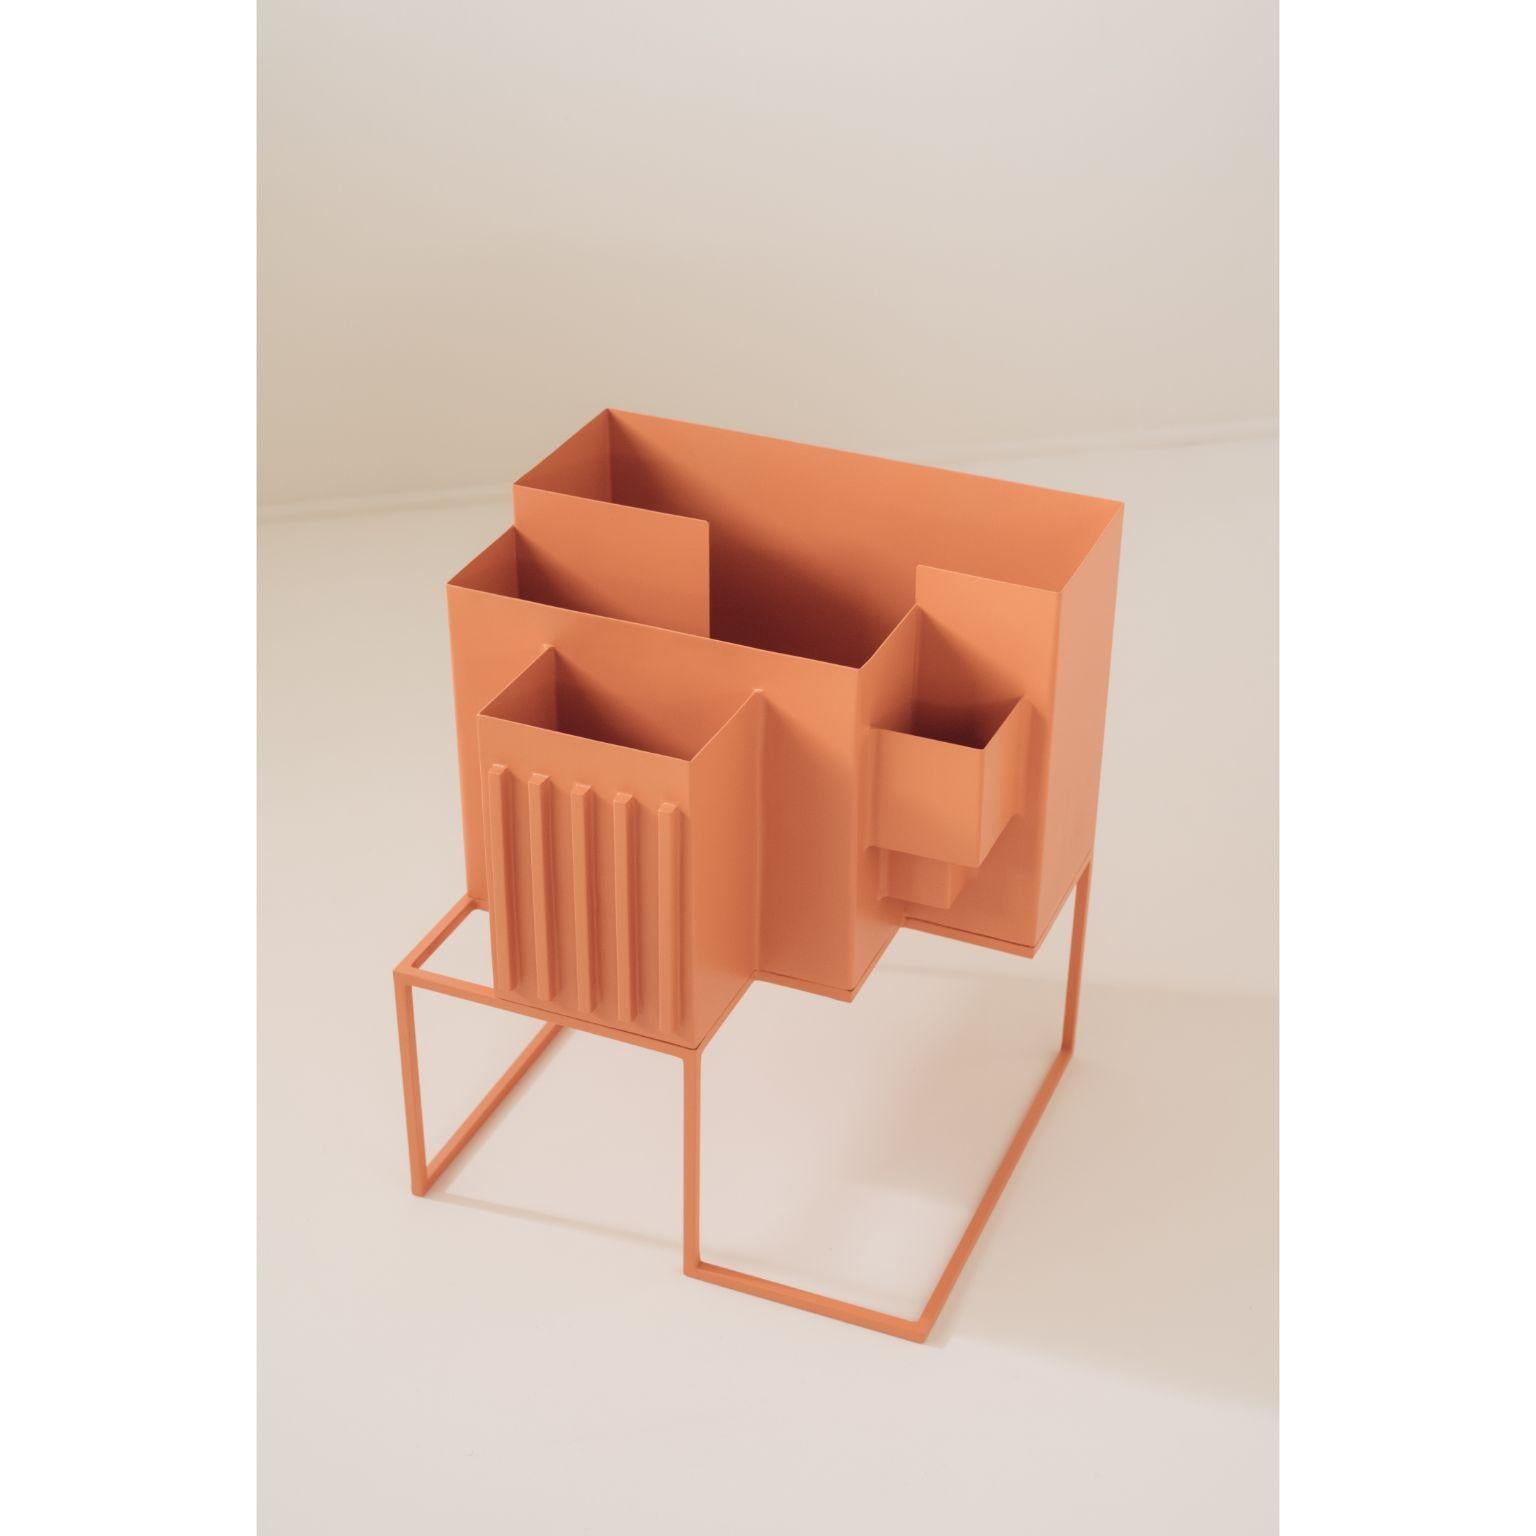 Sculpture brutaliste de Sofia Alvarado
Dimensions : D 40 x L 35 x H 48 cm
MATERIAL : Métal laqué.
Ces objets peuvent être personnalisés en fonction des couleurs proposées et des matériaux de série. 

Brutantes. Chaque objet est une sculpture